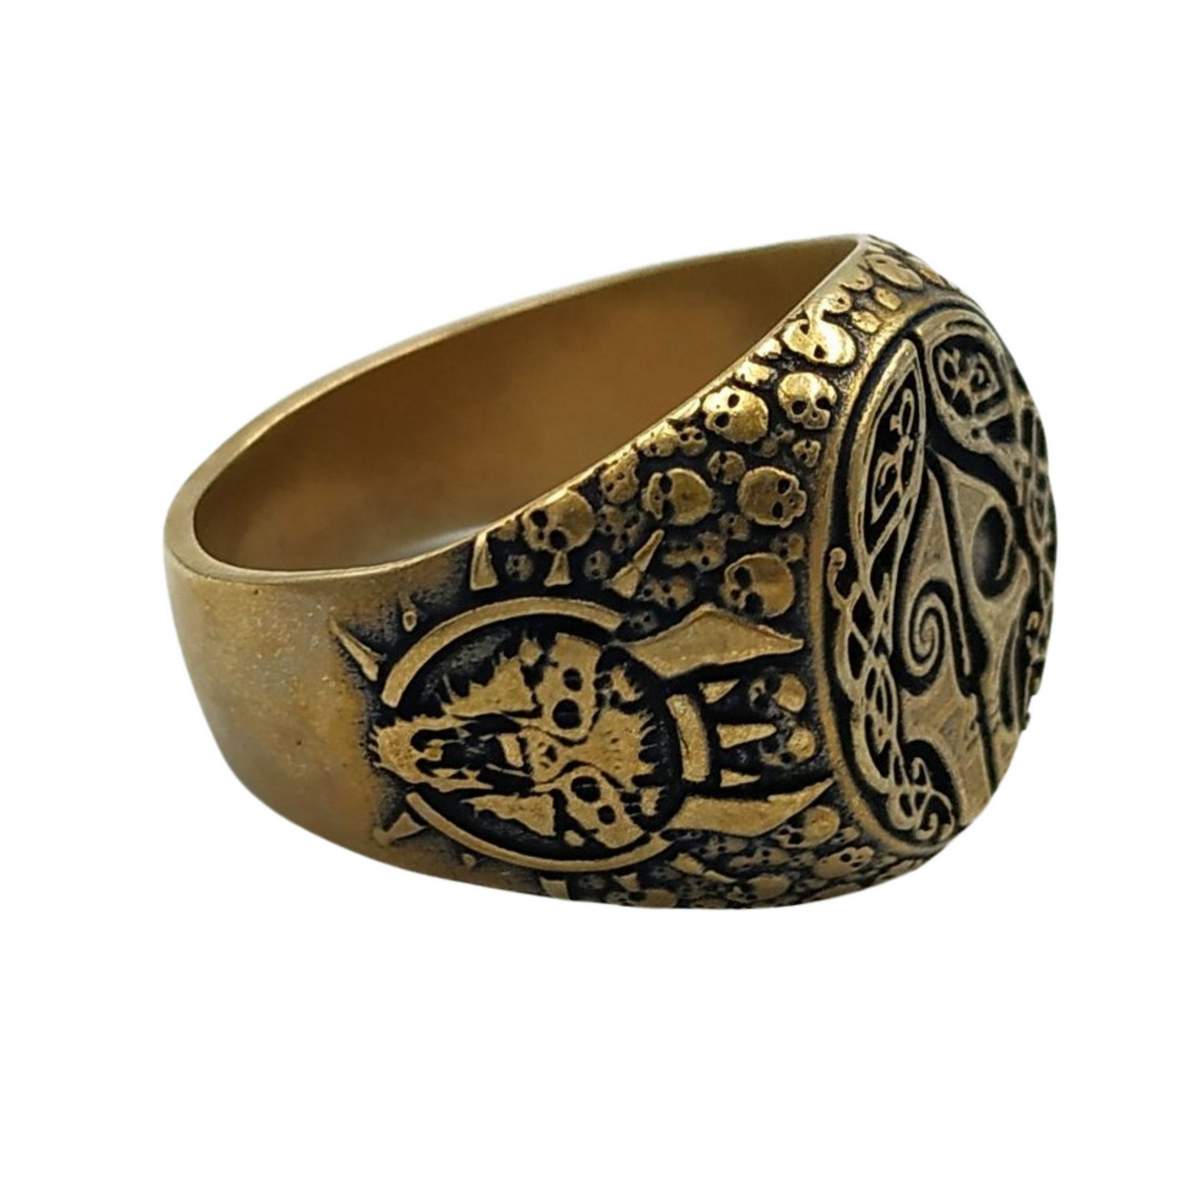 Hel goddess ring from bronze